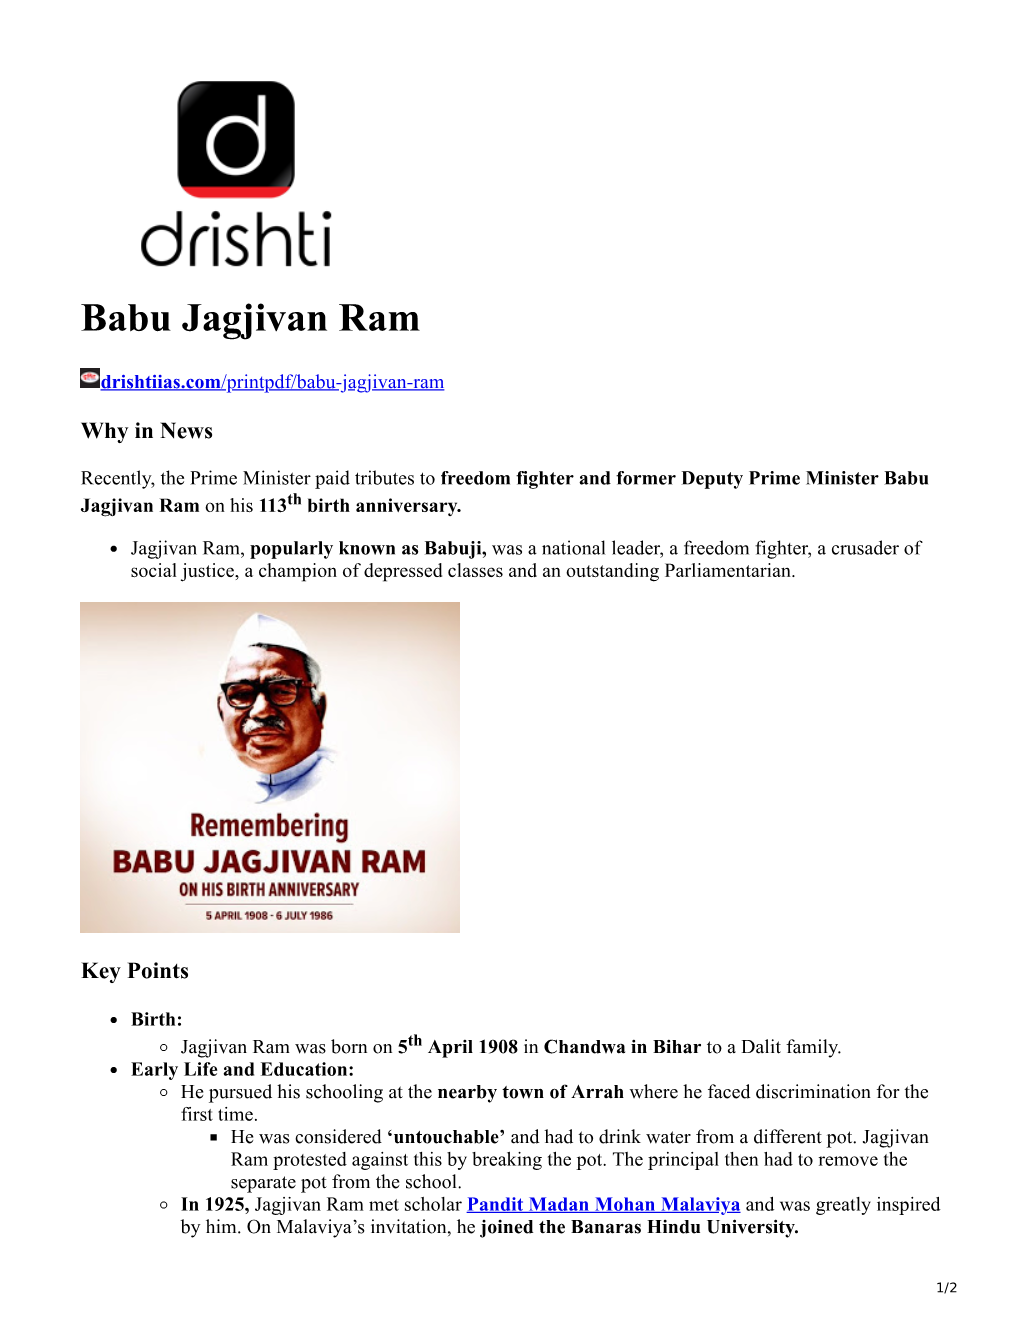 Babu Jagjivan Ram